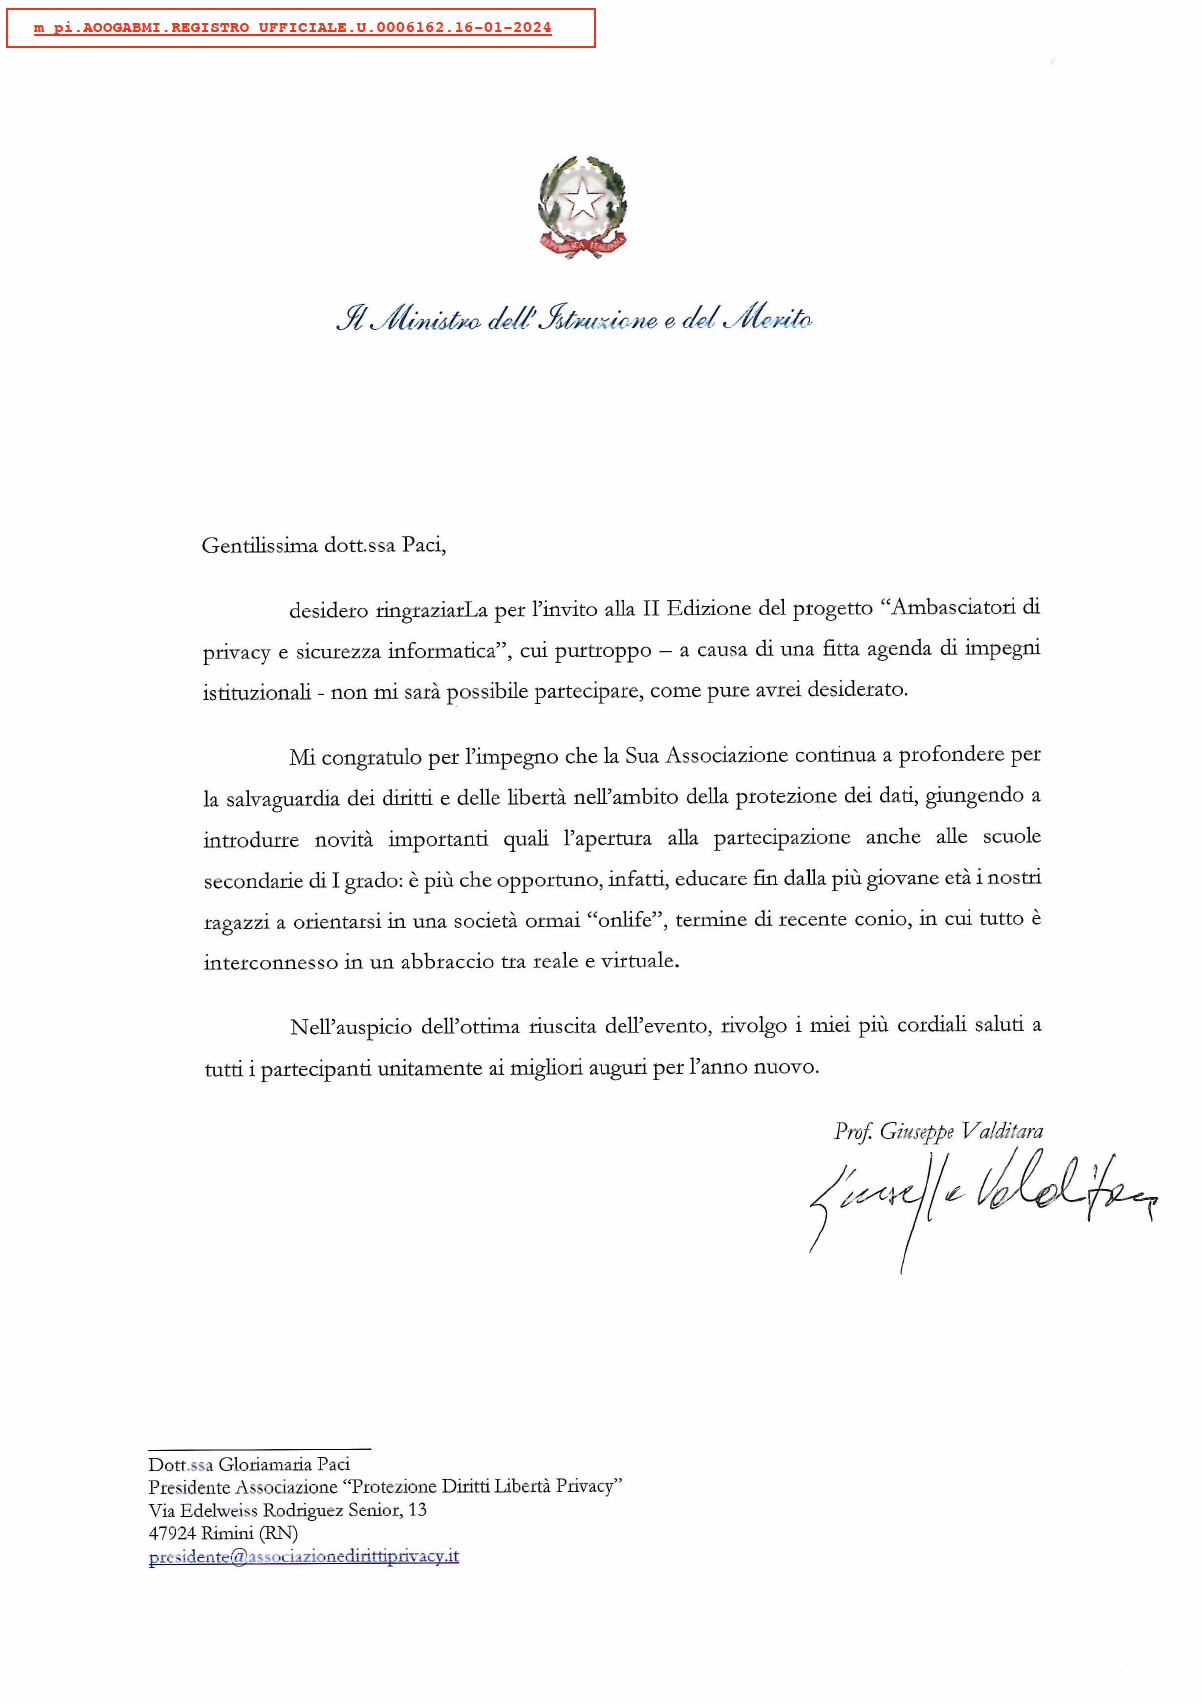 Lettera del Ministro dell’ Istruzione e del Merito Prof. Giuseppe Valditara